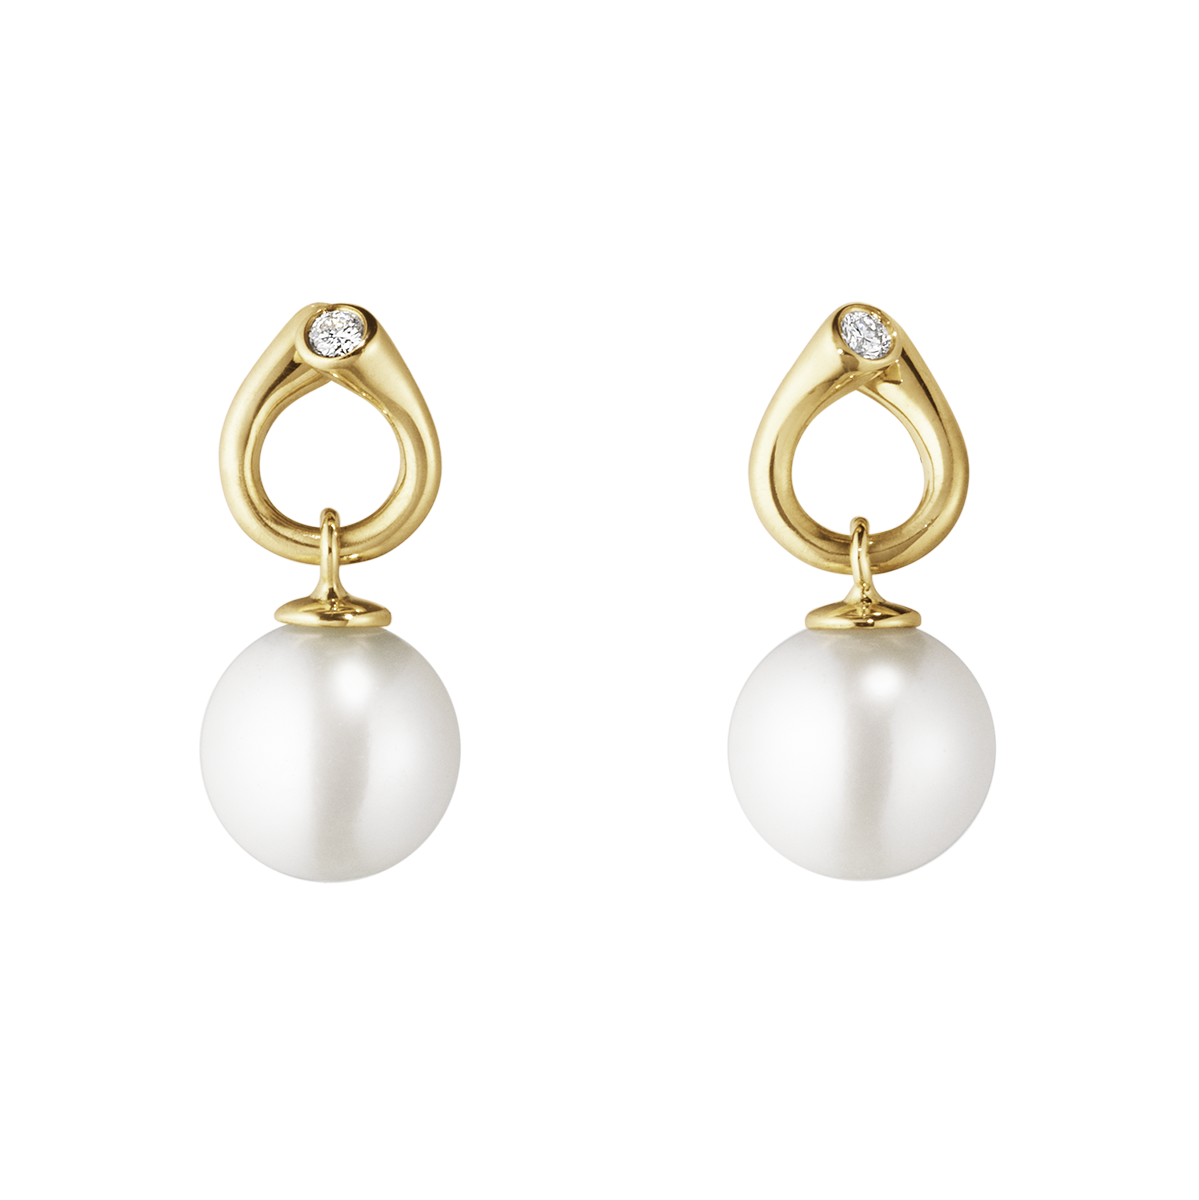 Magic øreringe med perler og diamanter - guld fra Georg Jensen